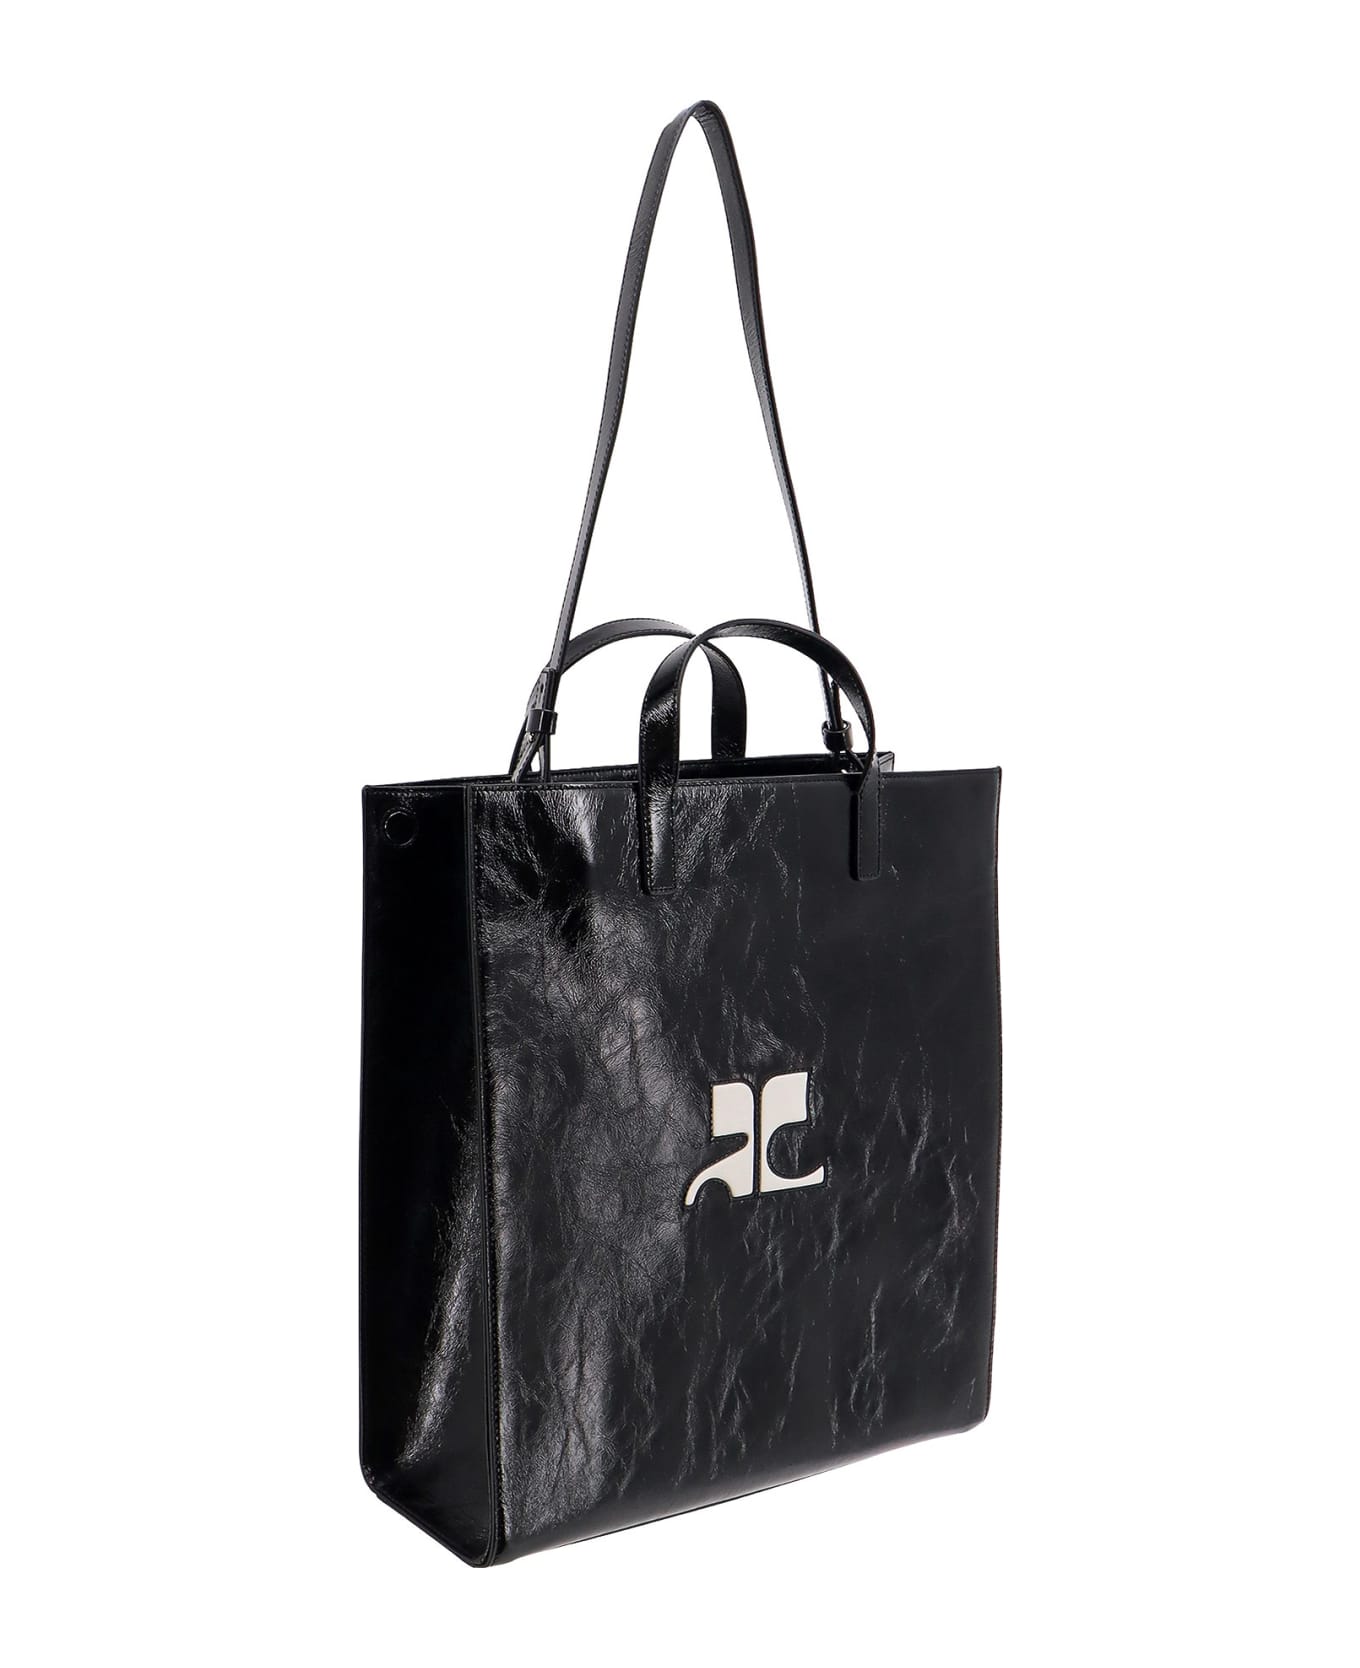 Courrèges Heritage Naplack Handbag - Black トートバッグ